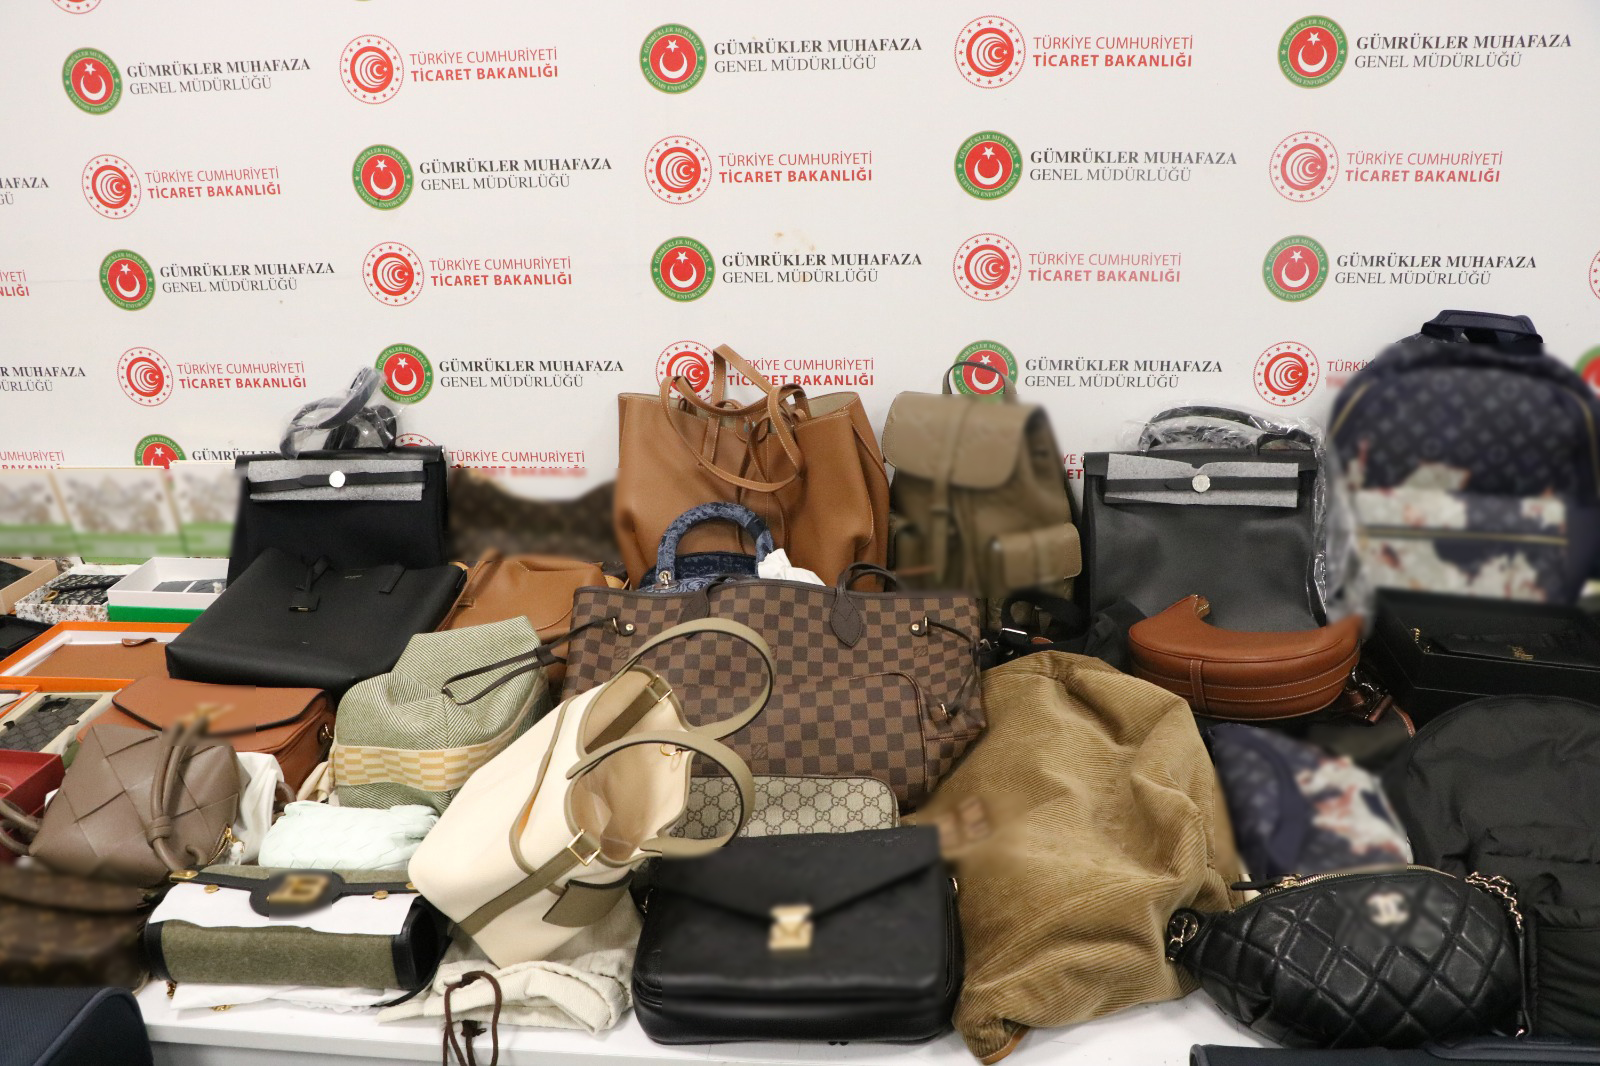 İstanbul Havalimanı'nda milyonlarca lira değerinde kaçak eşya yakalandı